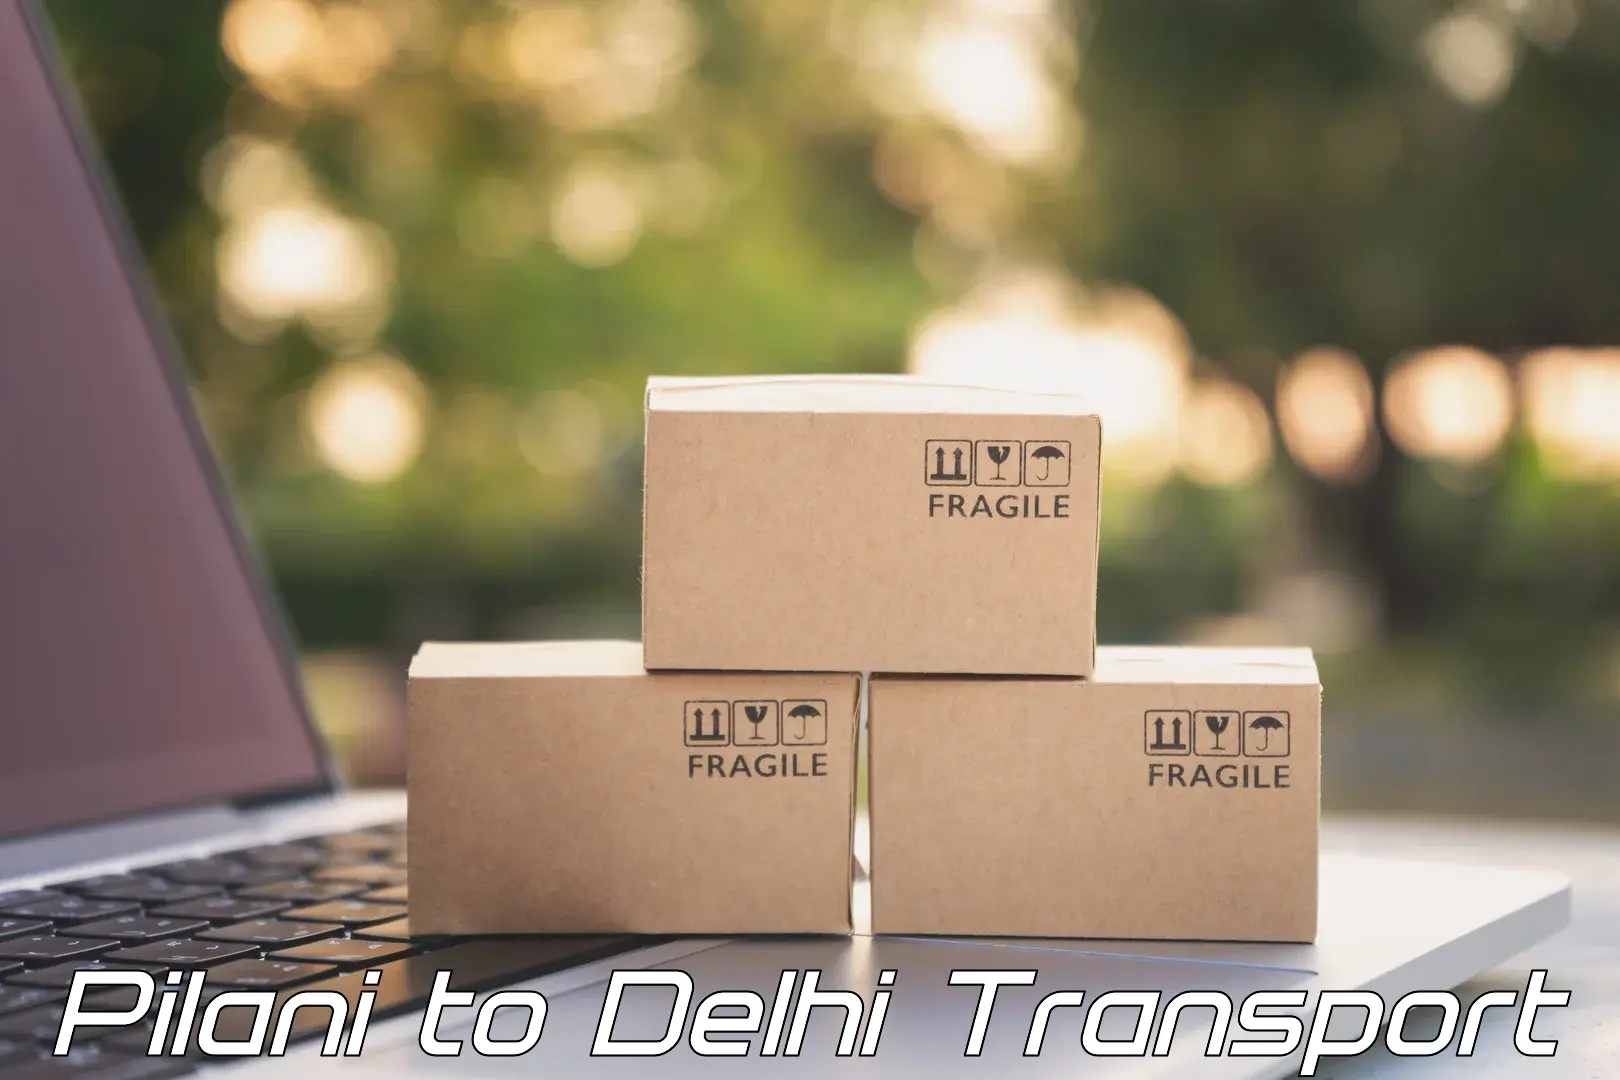 Express transport services Pilani to Delhi